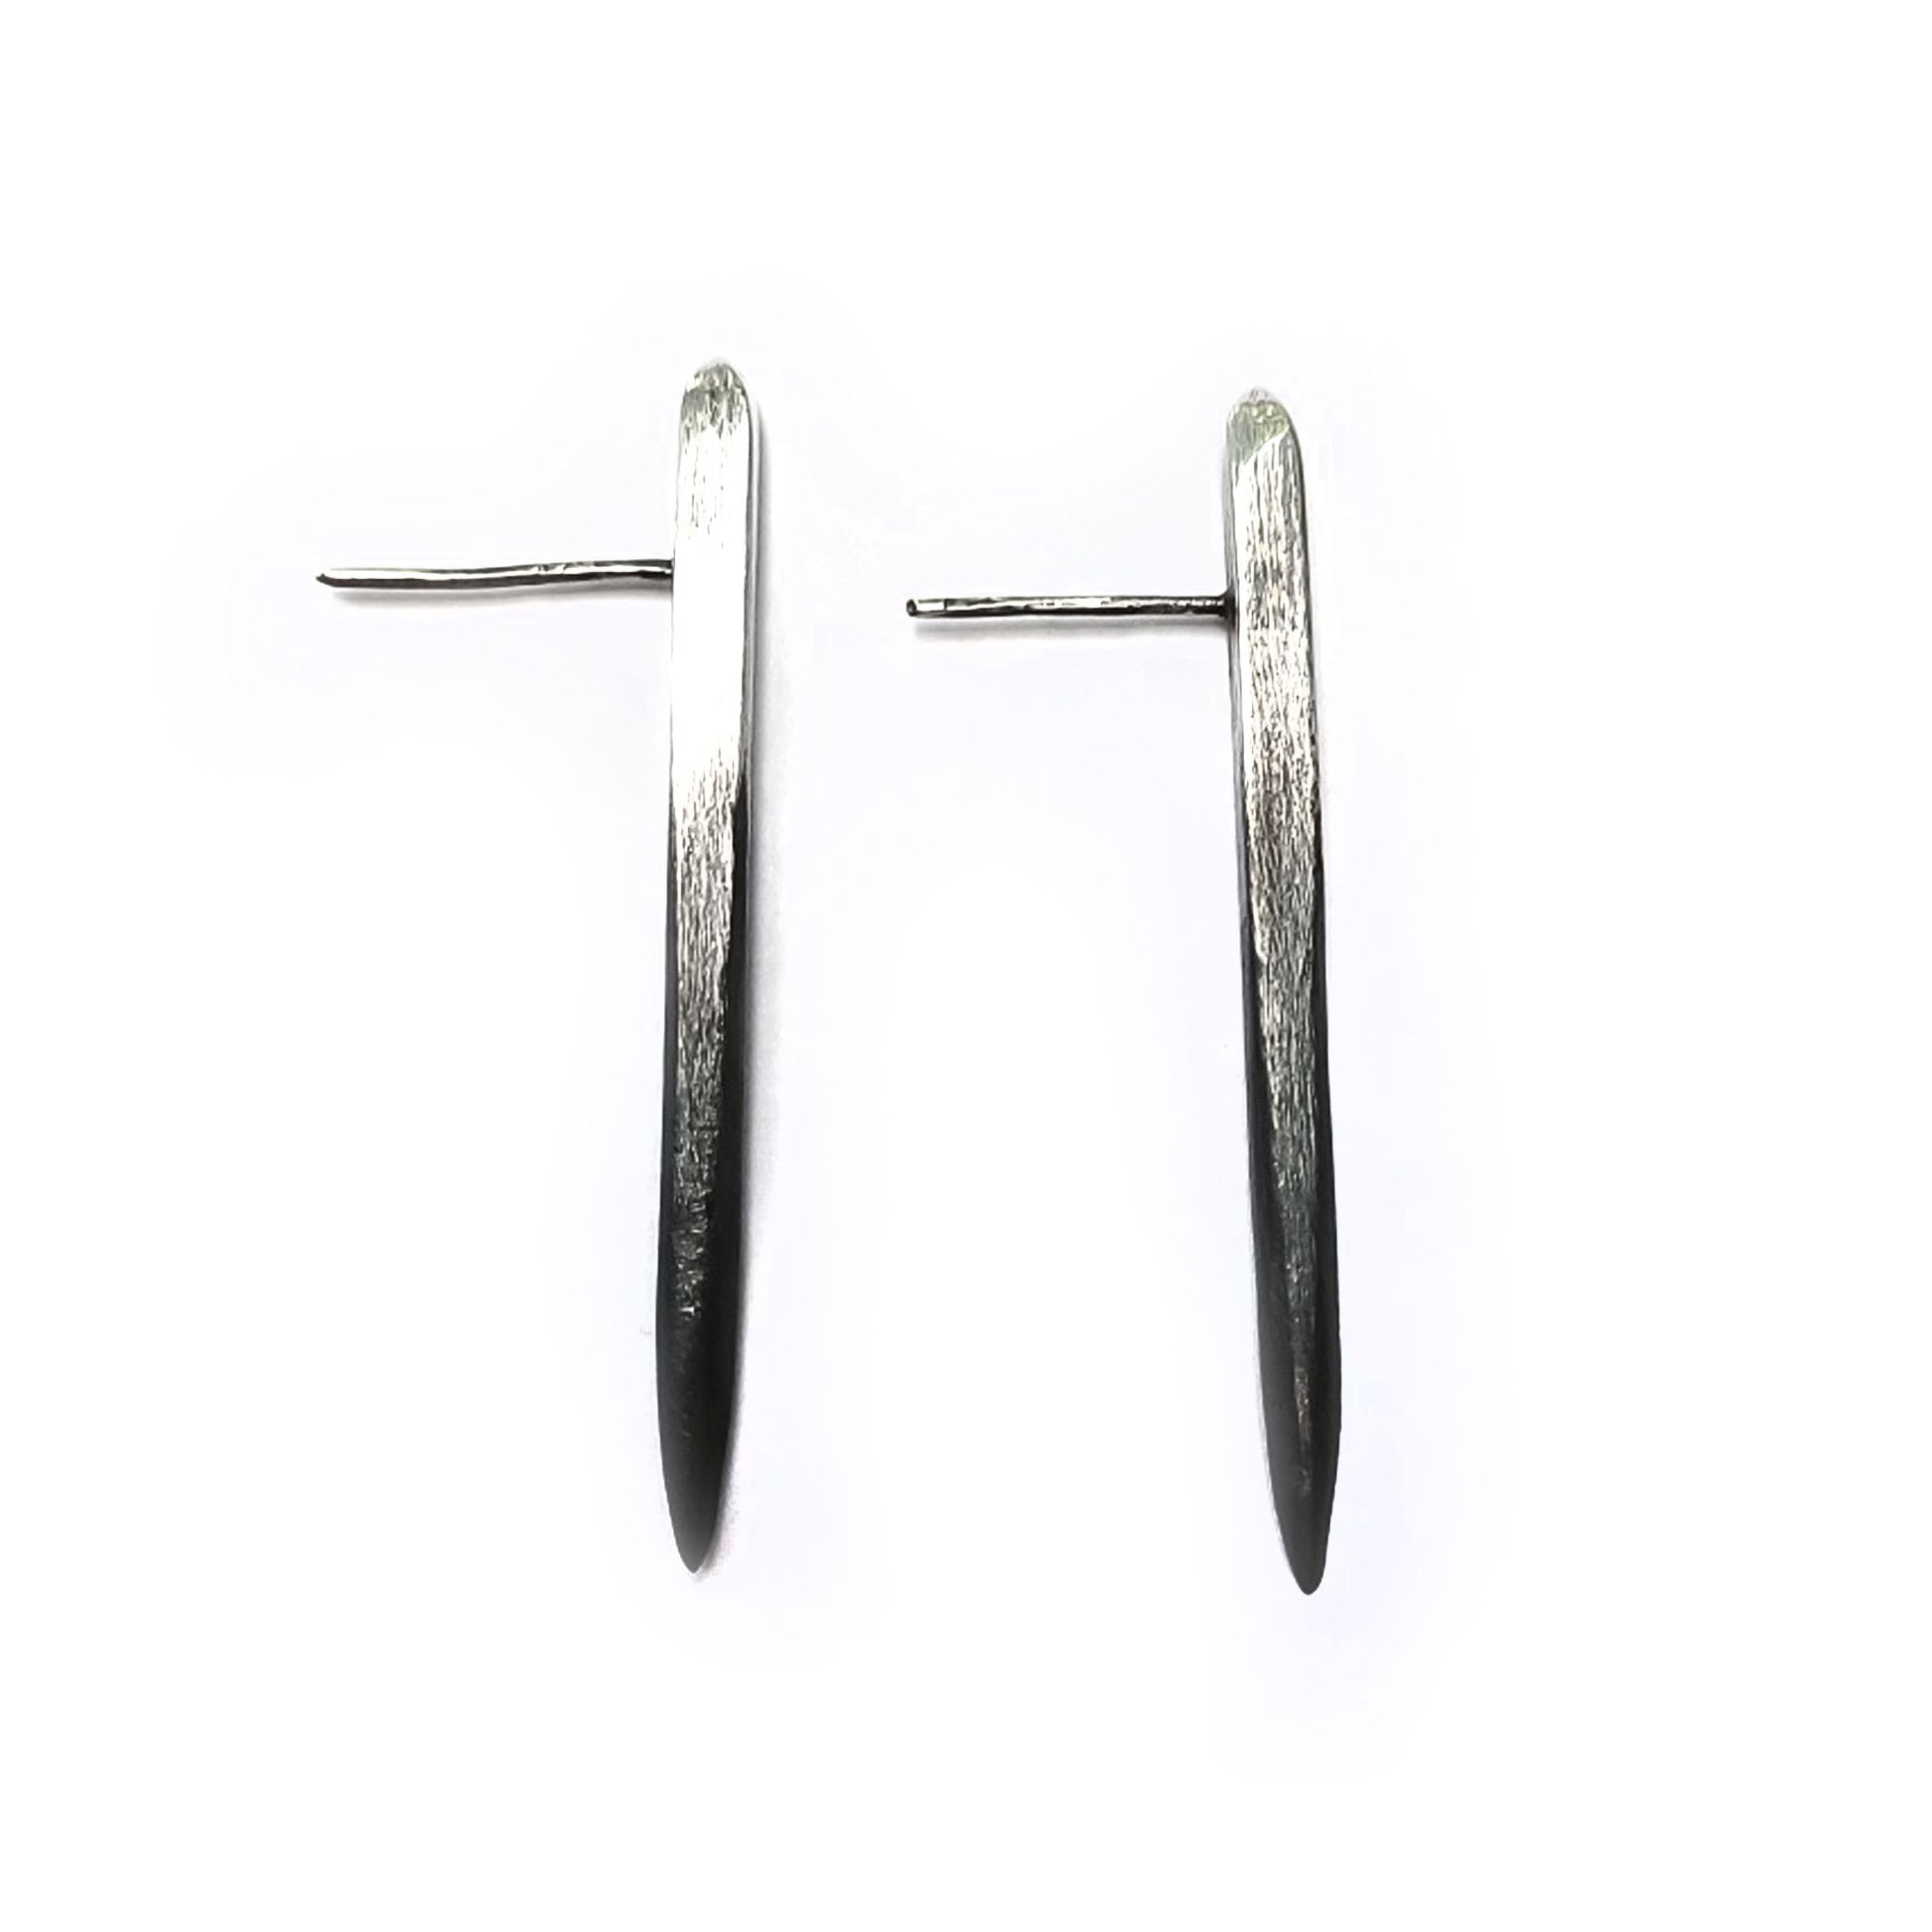 Silver spike earrings